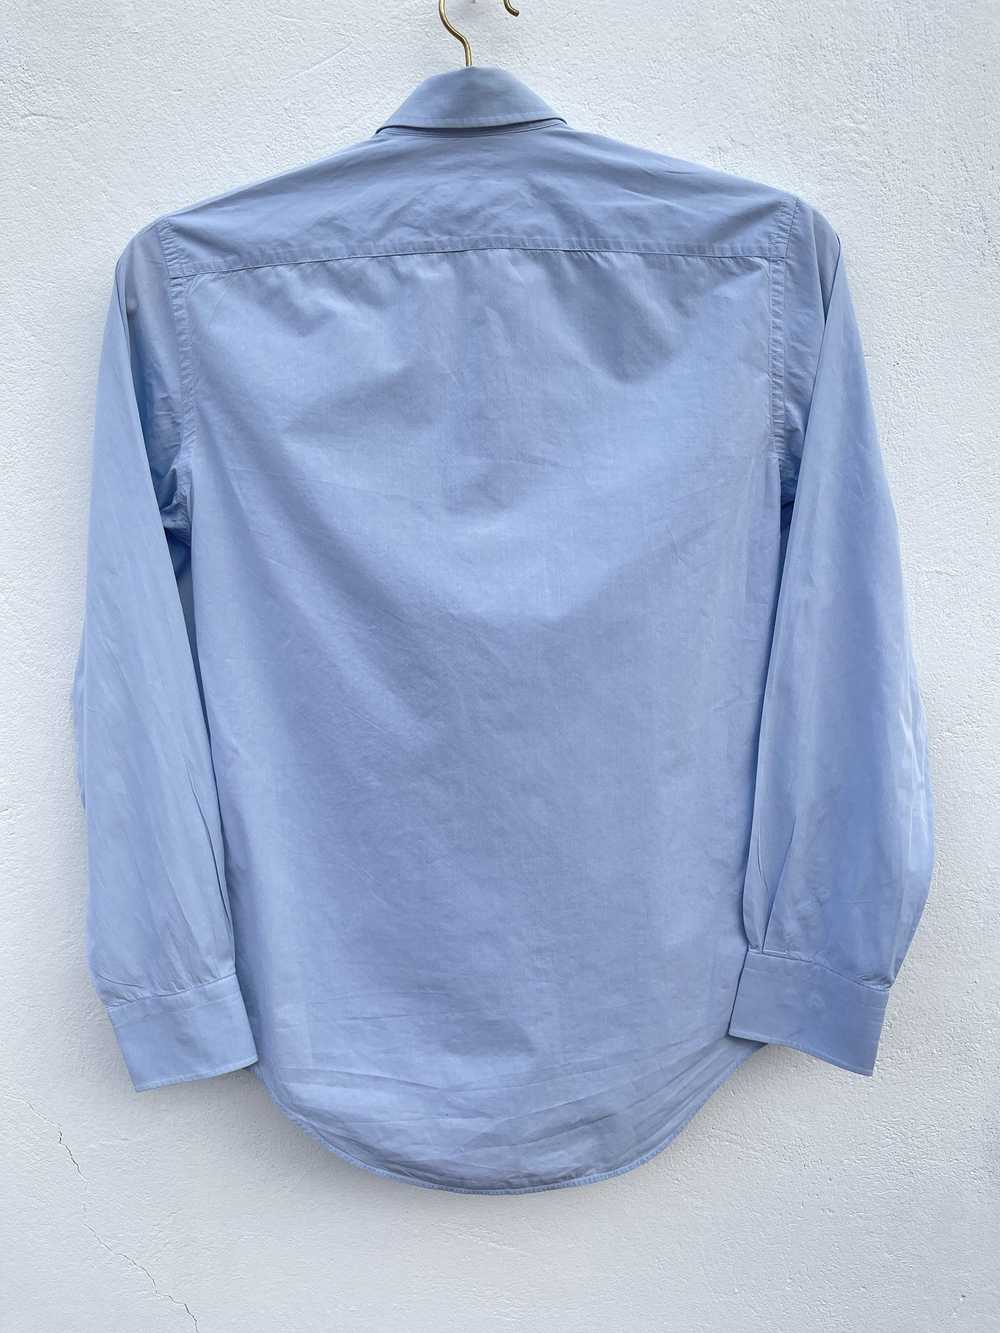 Lanvin 🔥 Lanvin Paris luxury shirt size Small co… - image 9